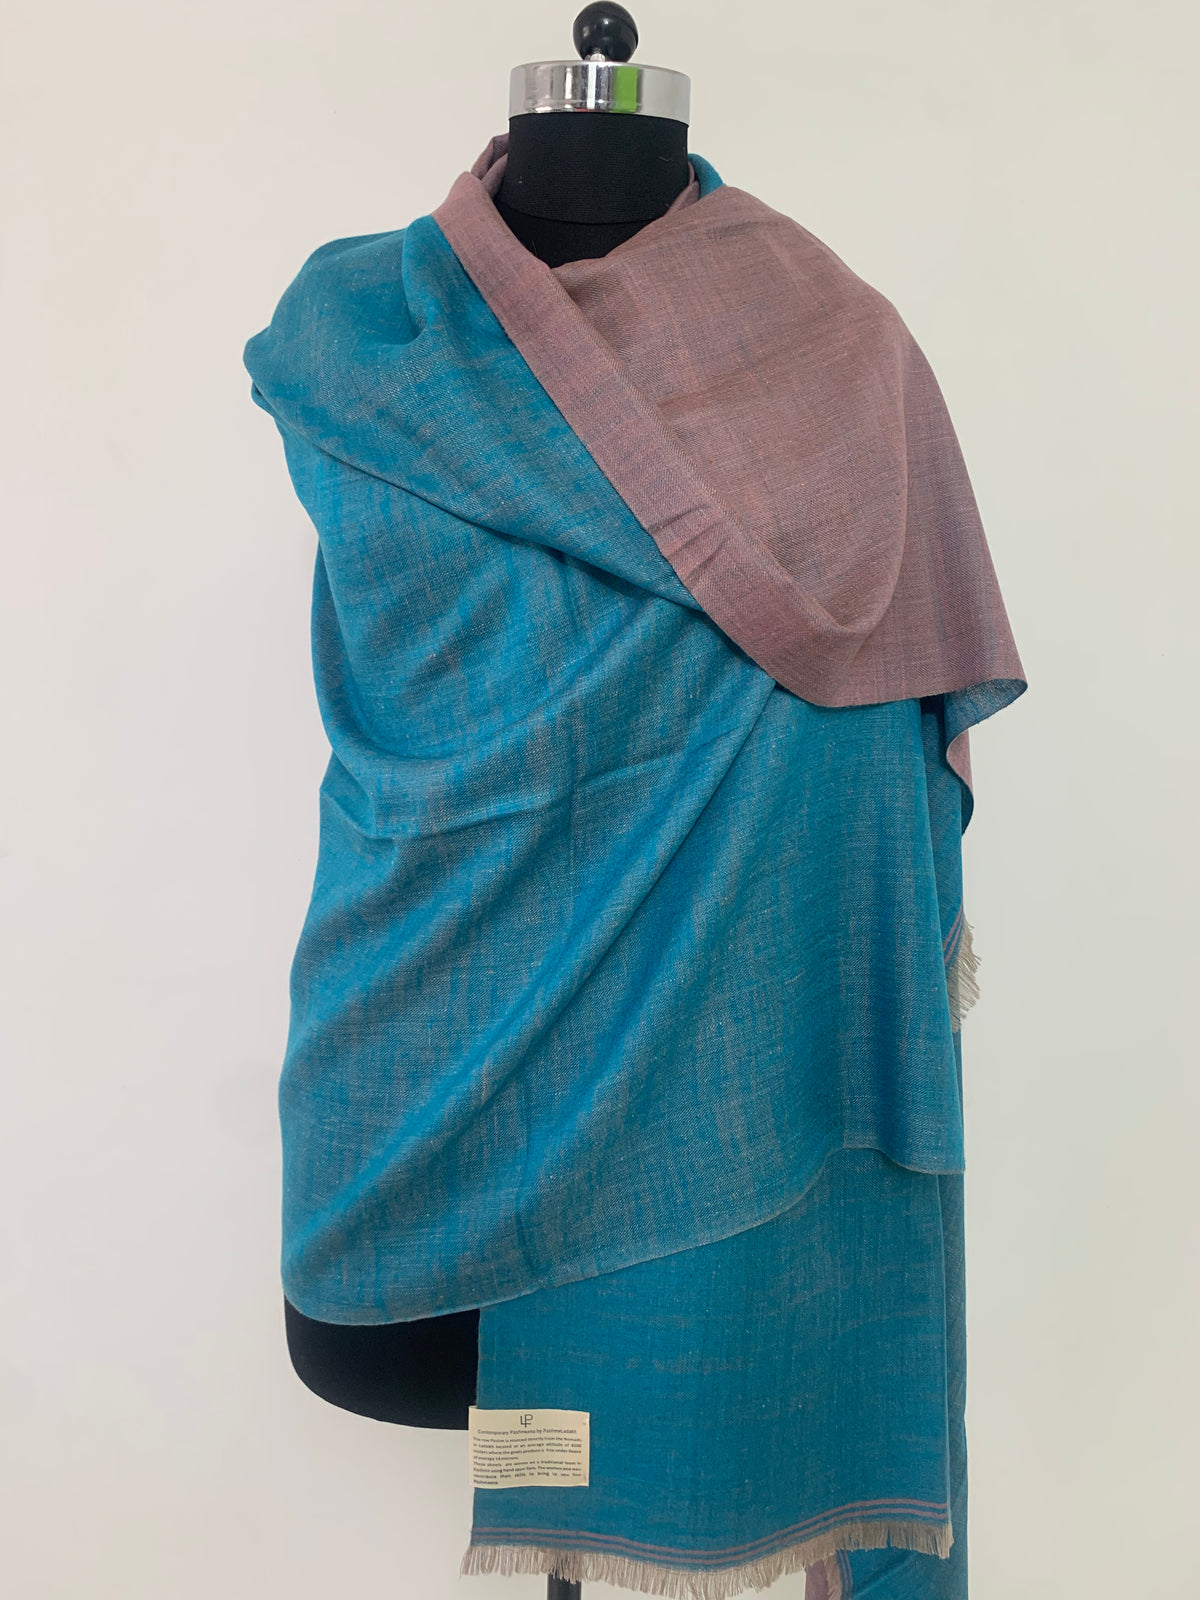 Teal reversible shawl